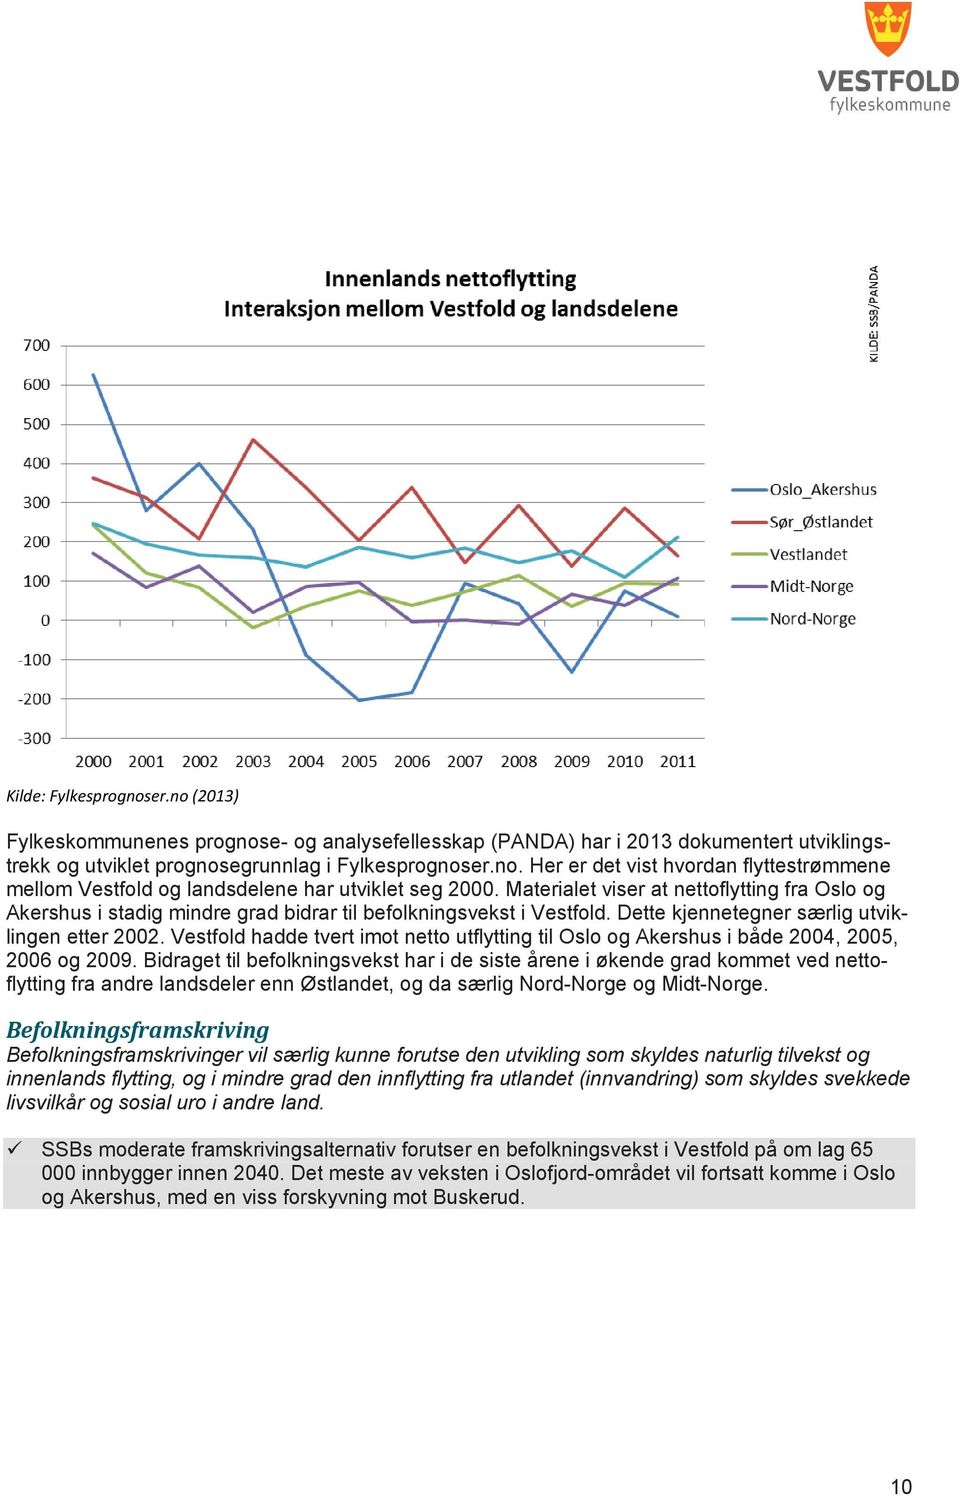 Vestfold hadde tvert imot netto utflytting til Oslo og Akershus i både 2004, 2005, 2006 og 2009.